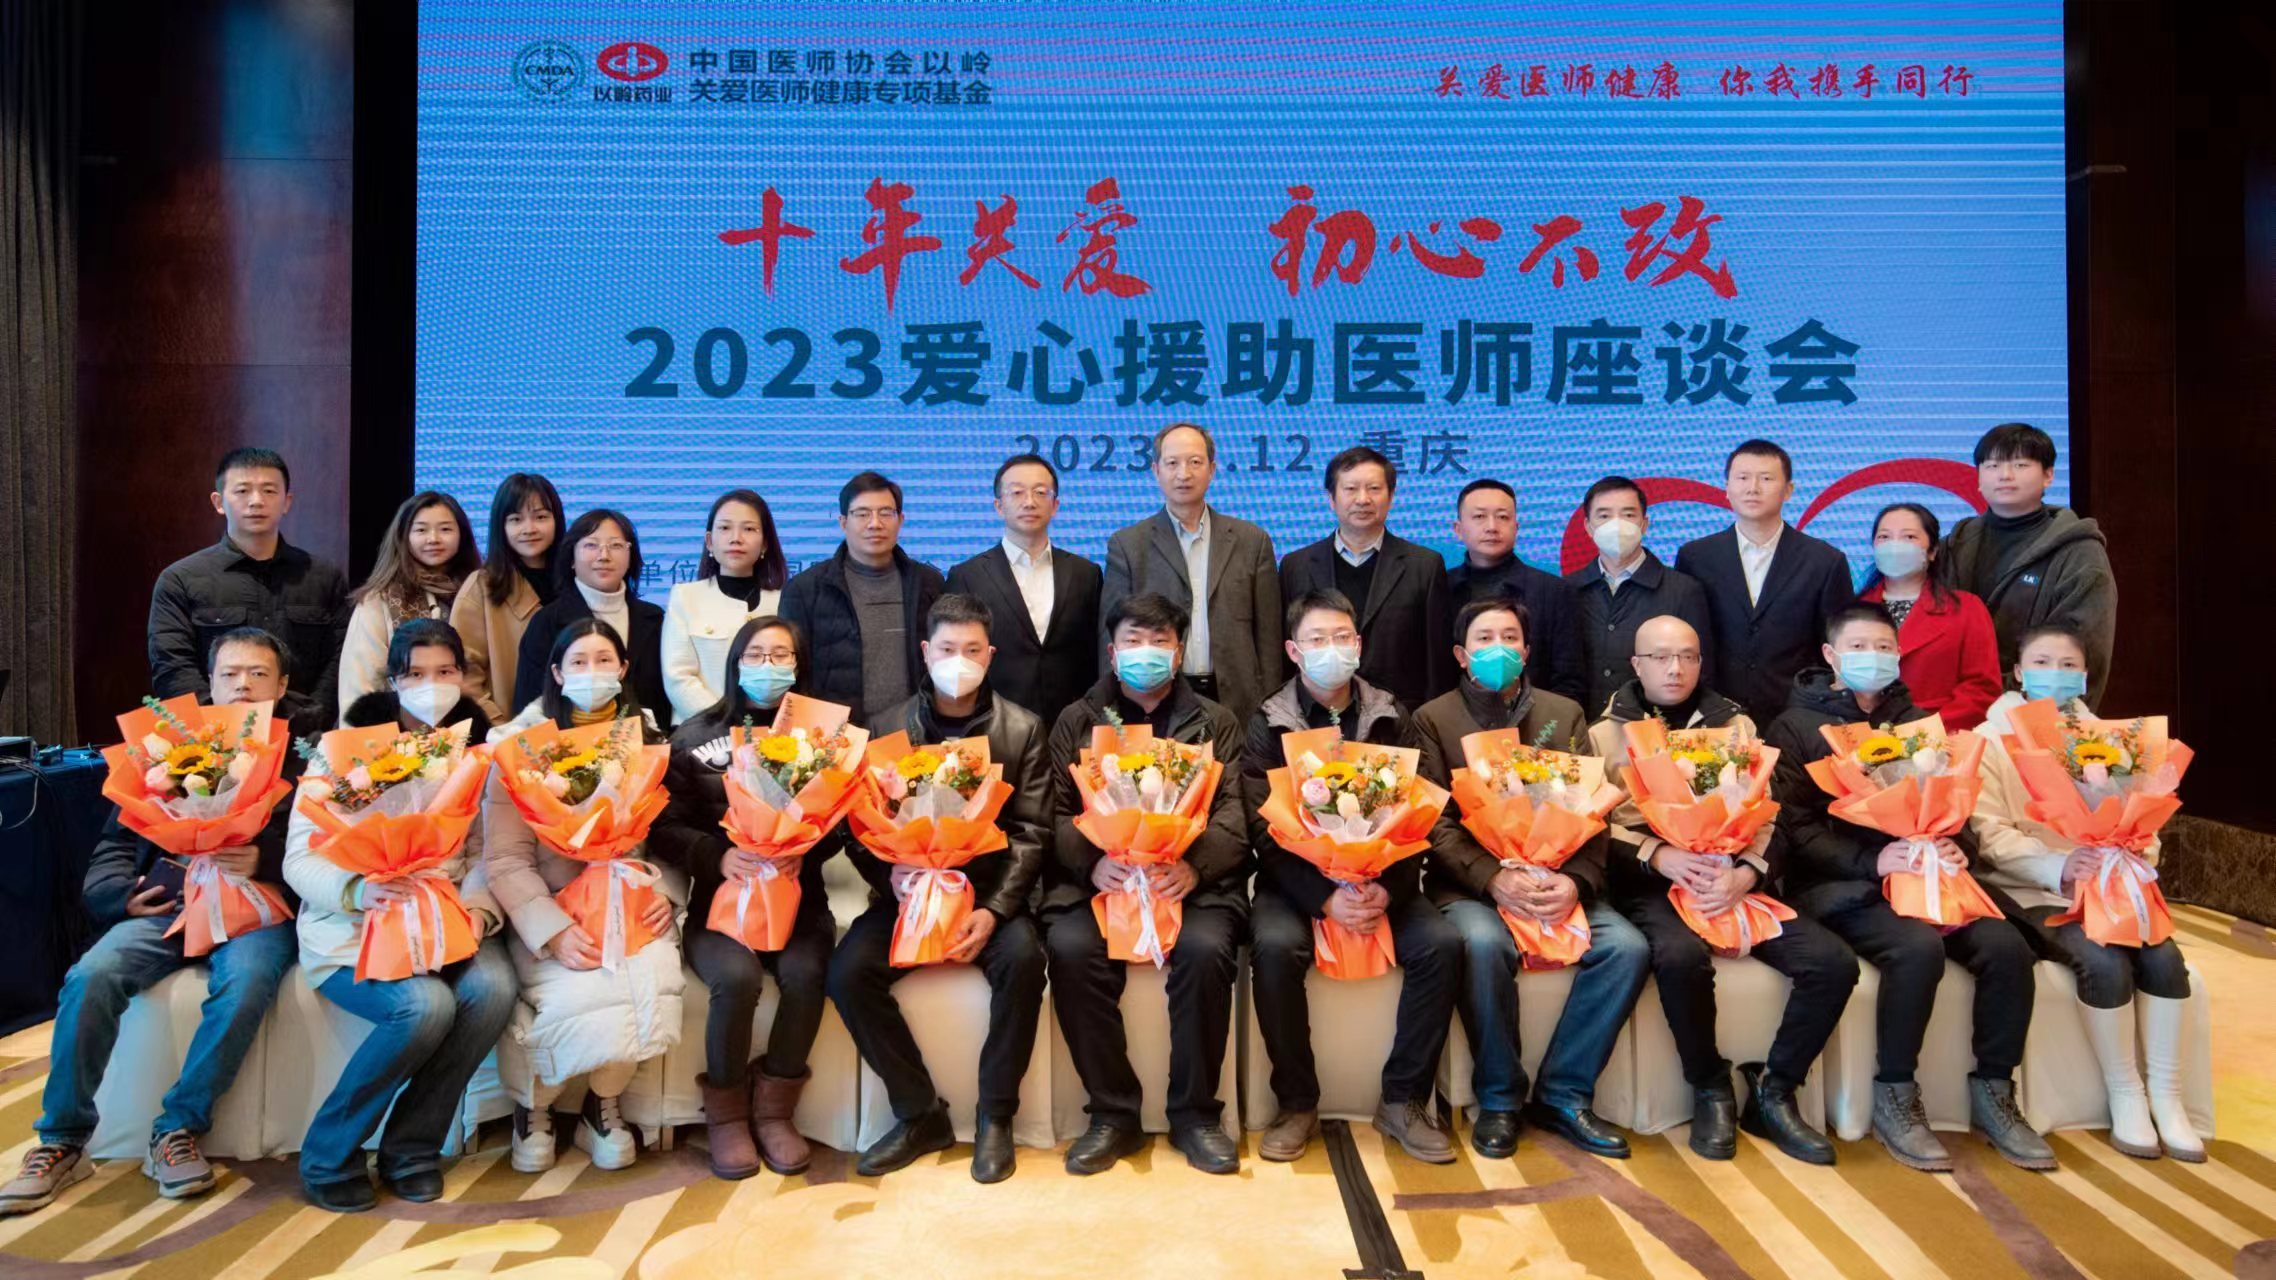 2023中國醫師協會z6尊龙凯时關愛醫師健康專項基金愛心援助醫師座談會在重慶舉行